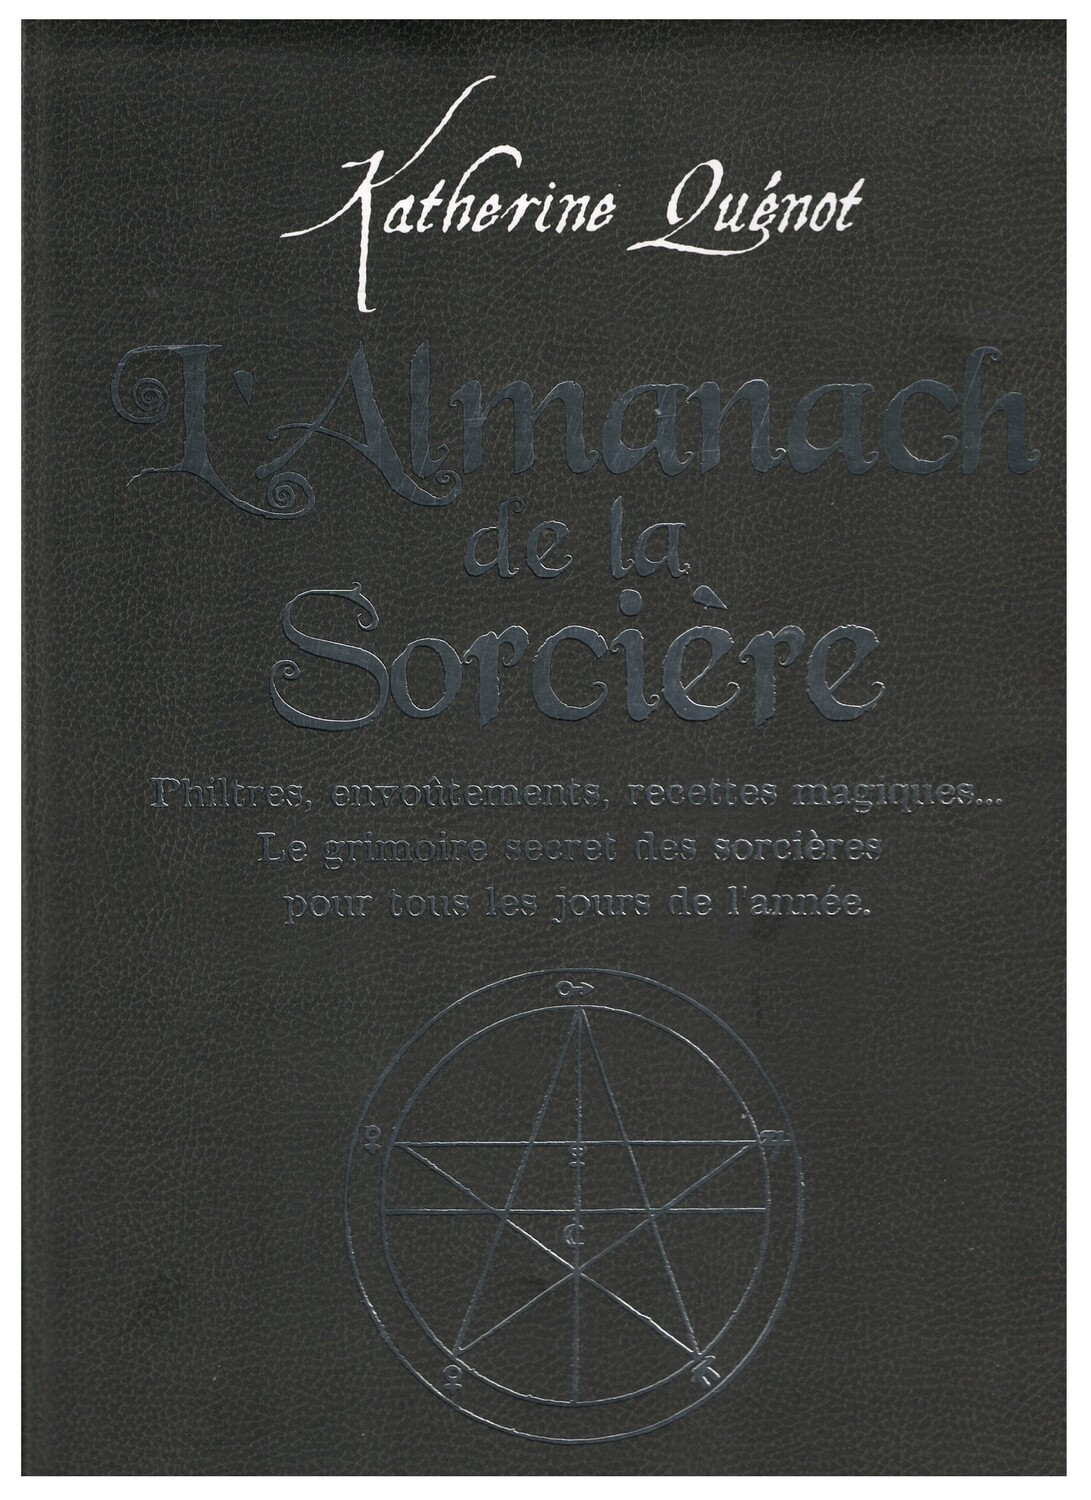 L'almanach de la sorcière